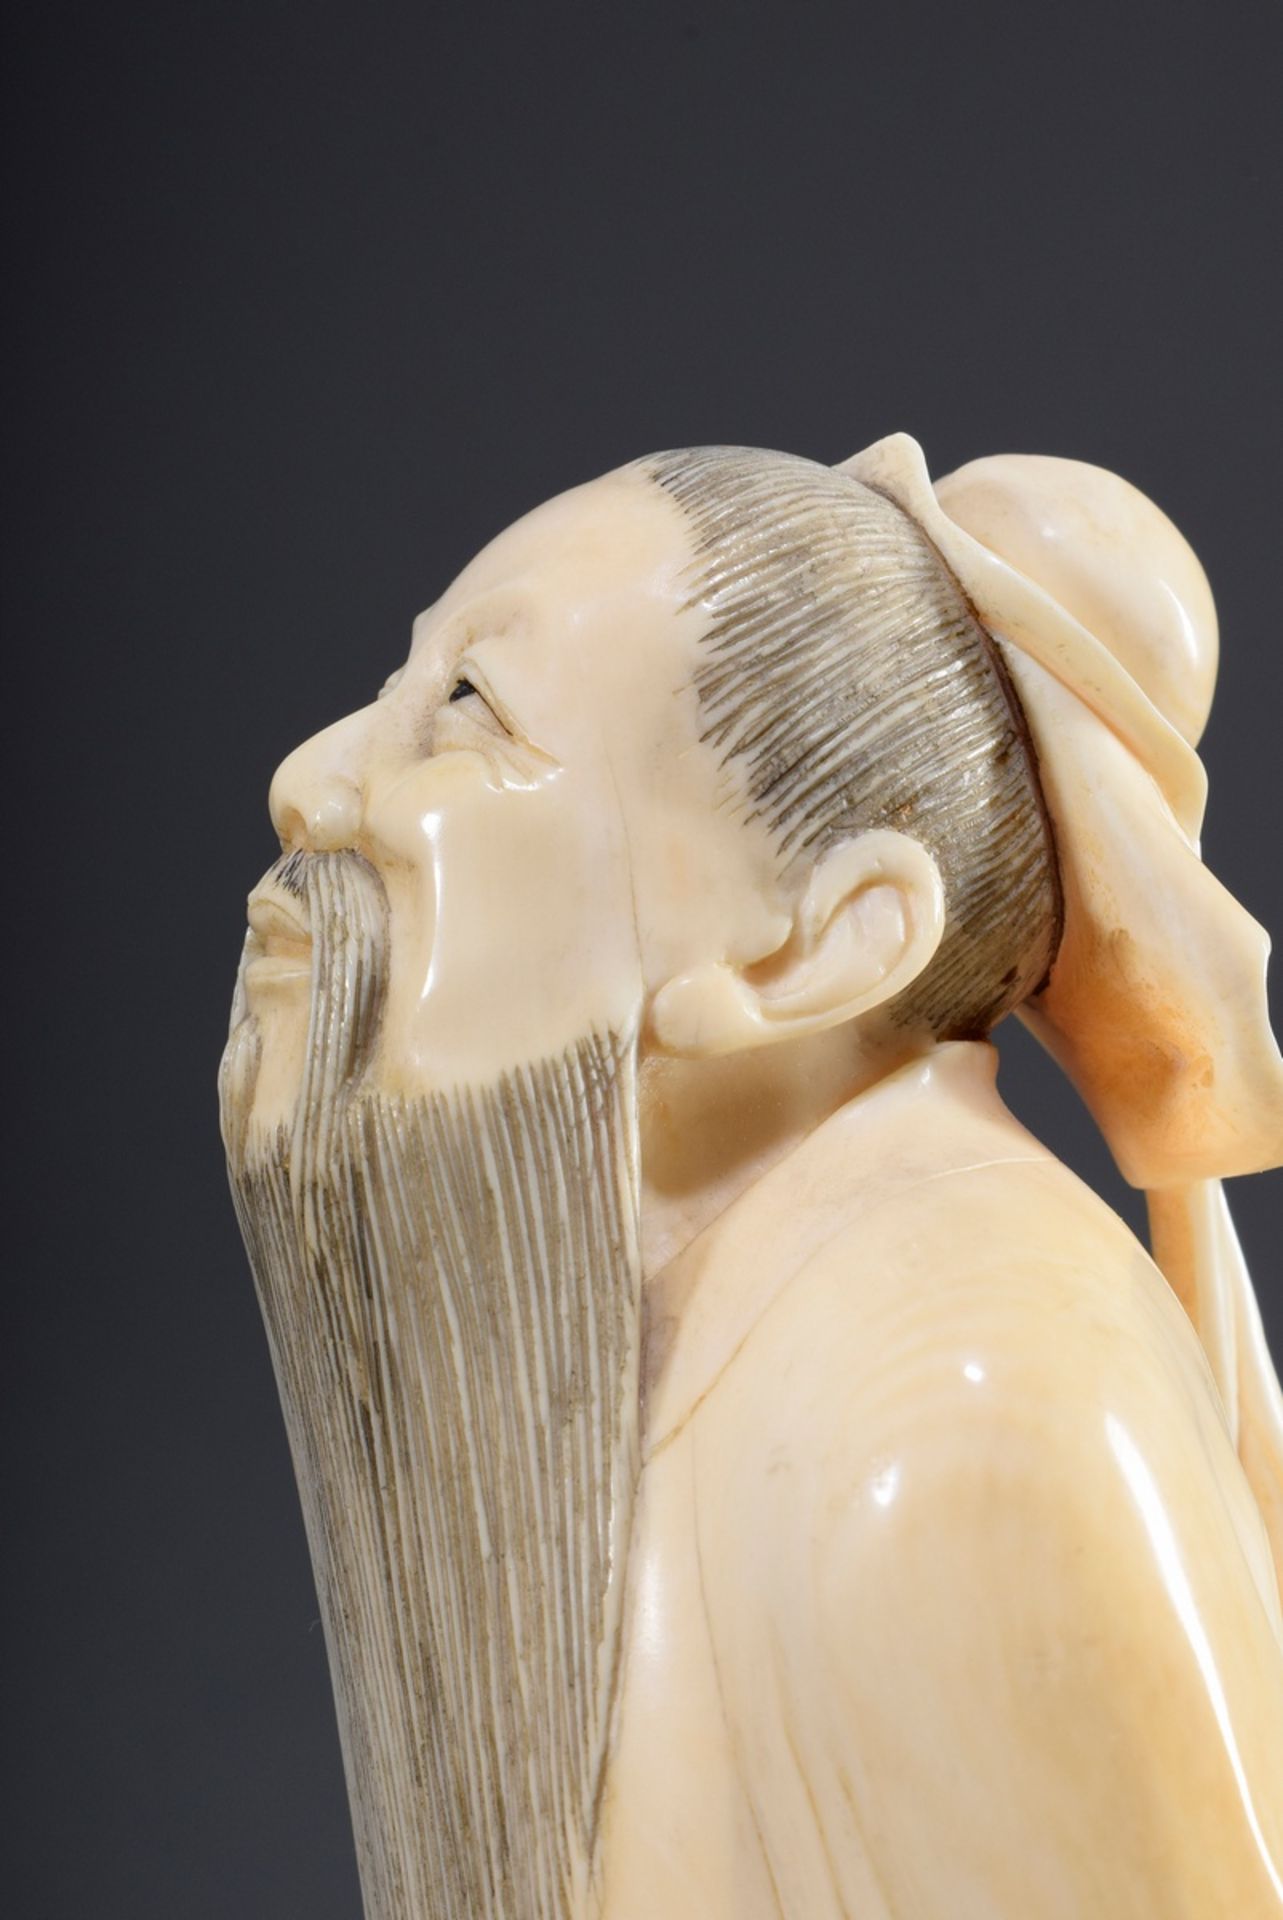 Chinesische Elfenbein Schnitzerei "Konfuzius, de | Chinese ivory carving "Confucius, looking up to - Bild 6 aus 9